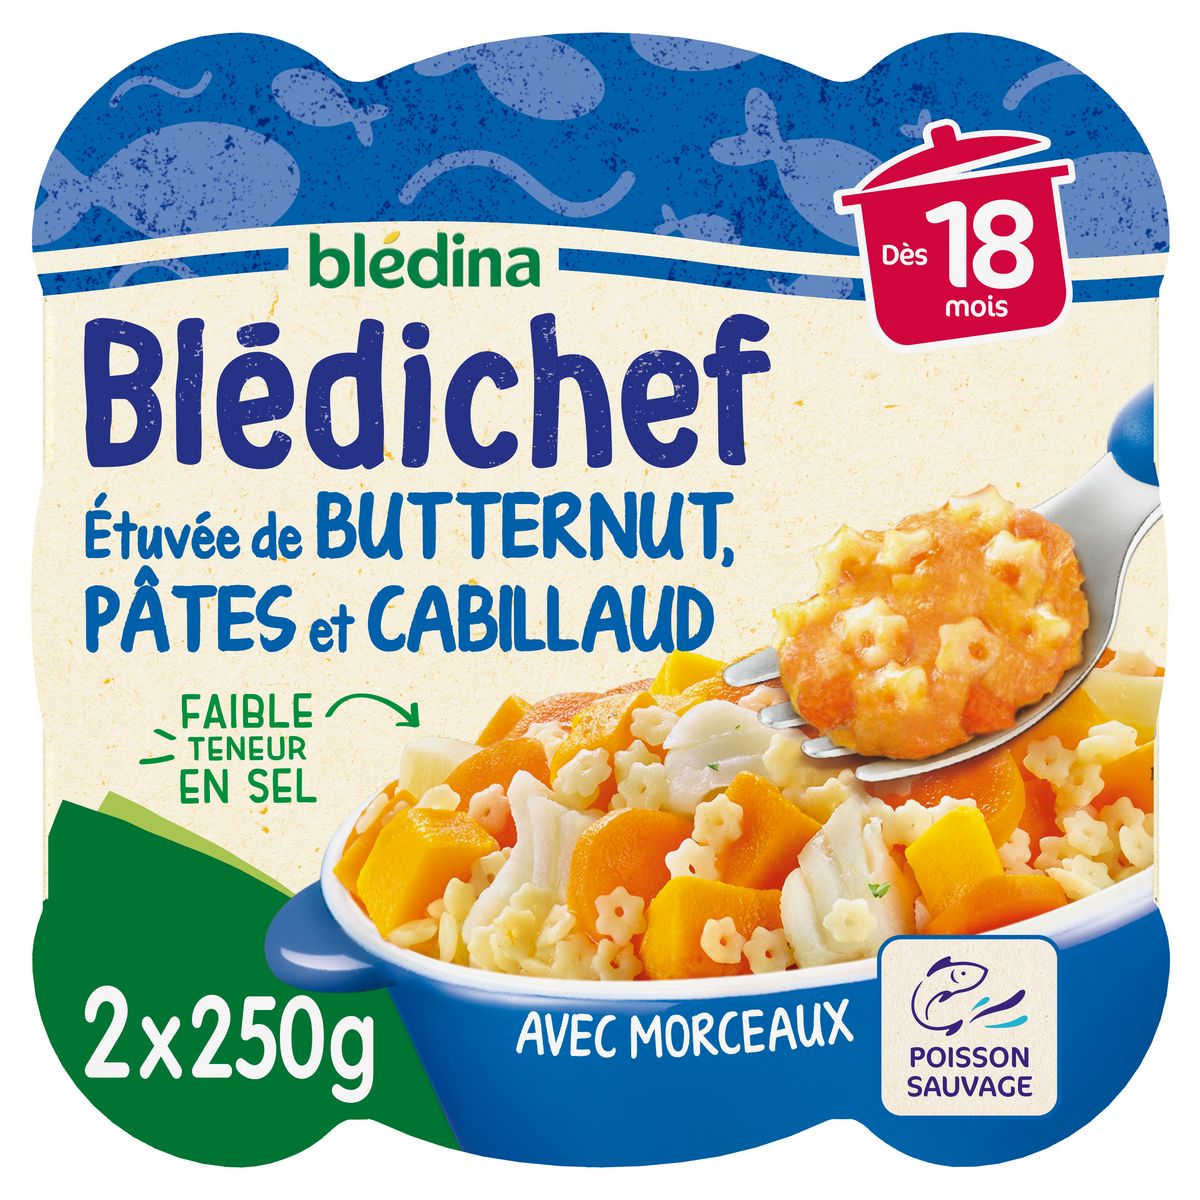 BLEDINA Blédichef assiette butternut pâtes cabillaud dès 18 mois 2x250g